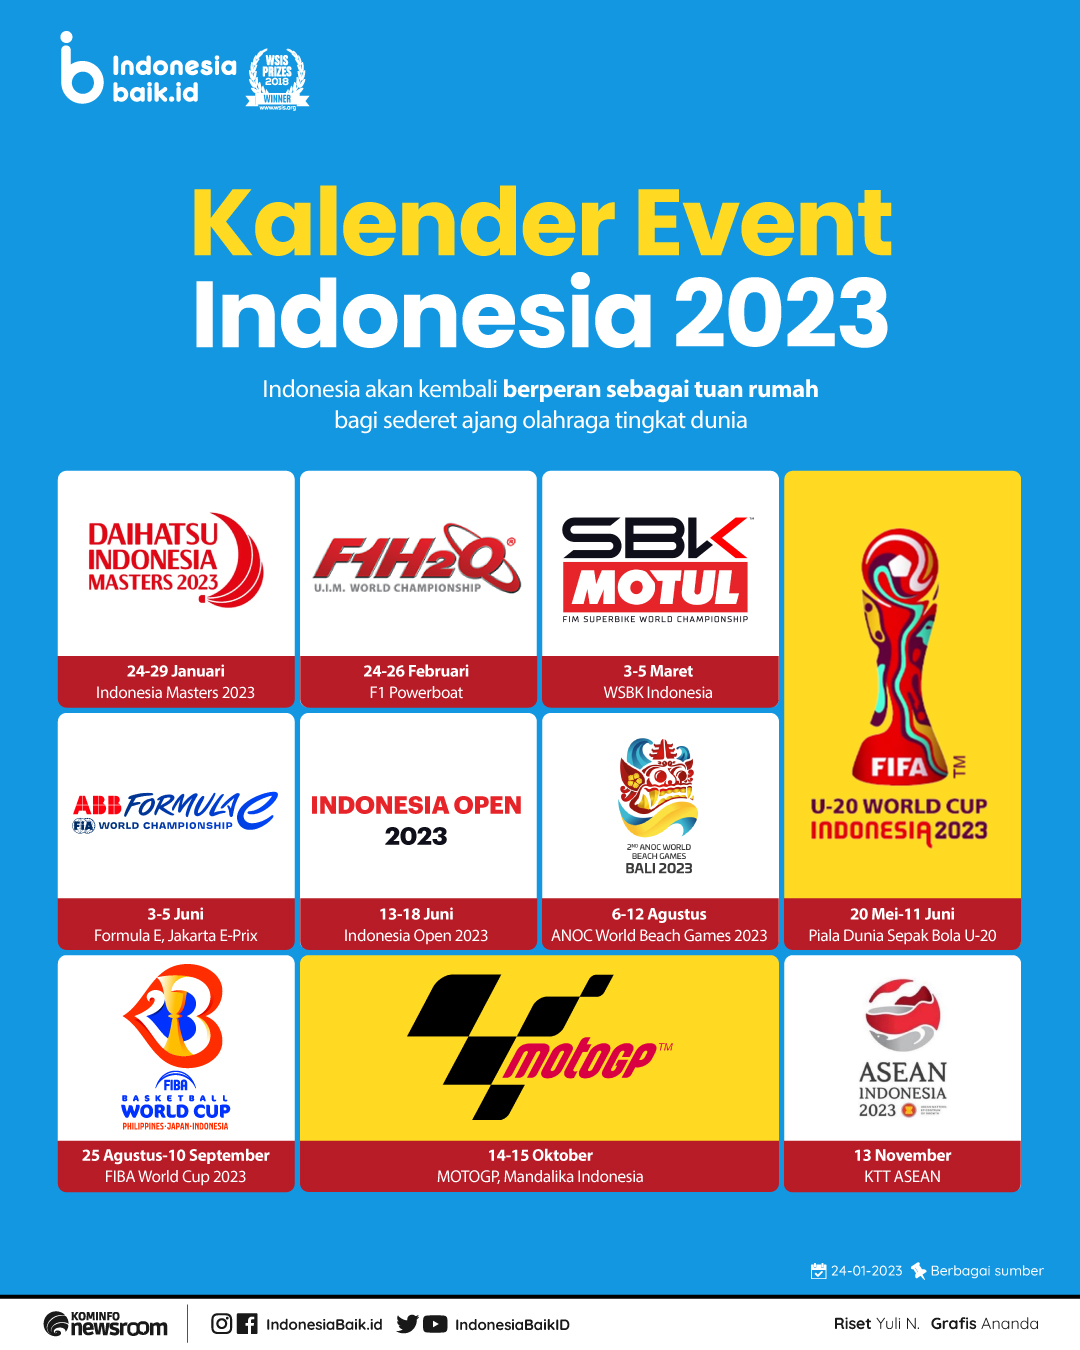 Kalender event di Indonesia tahun 2023